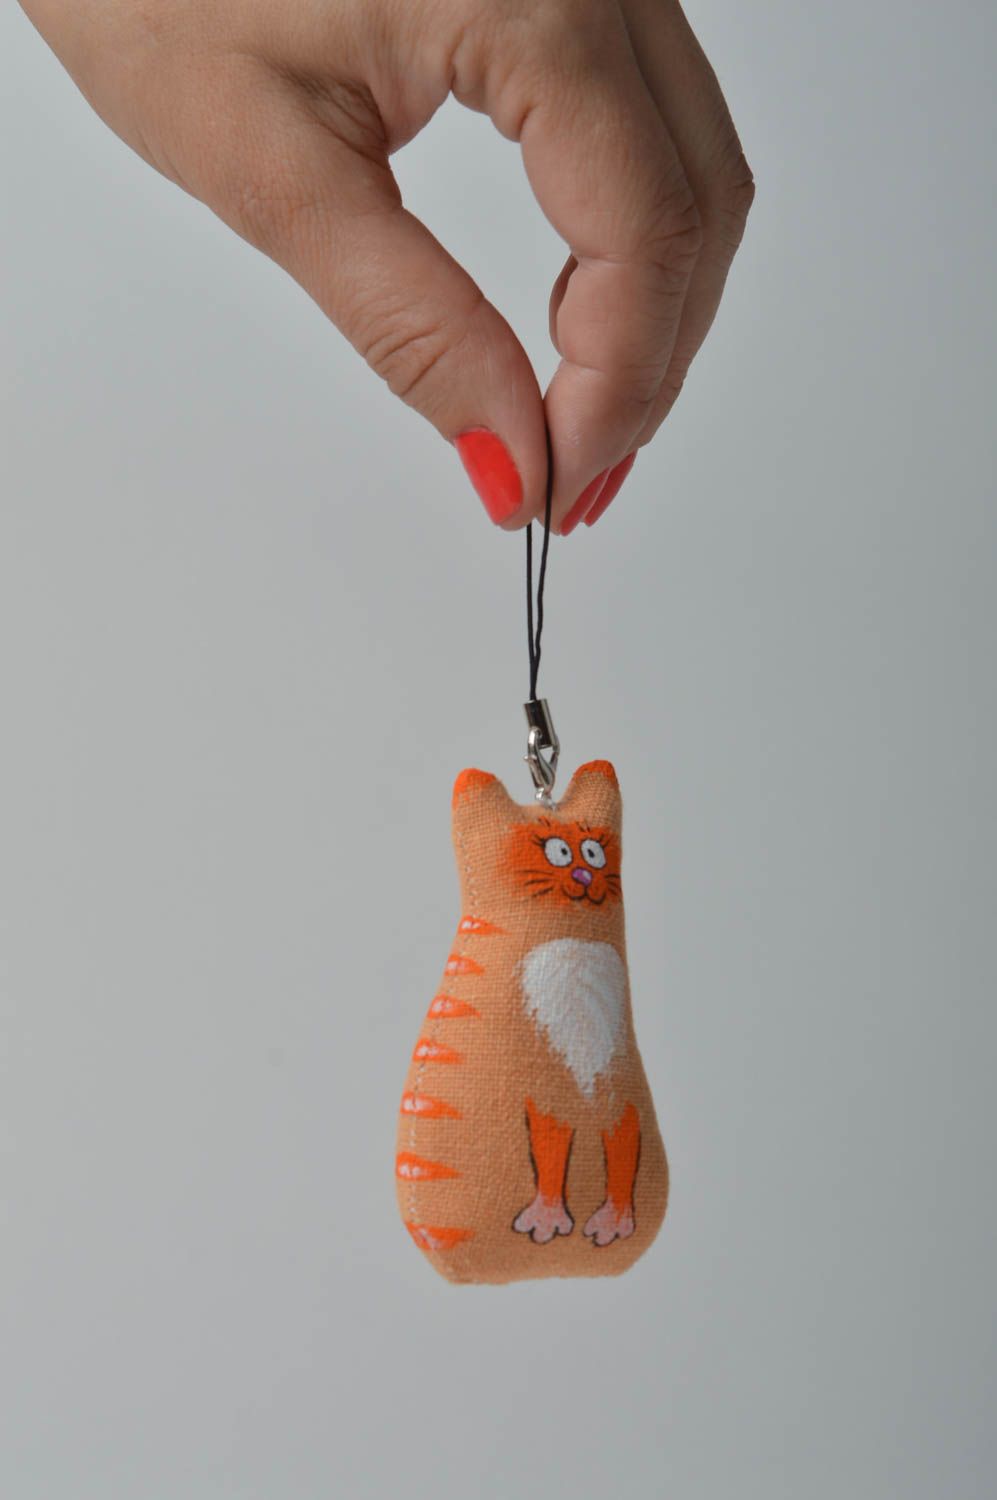 Llavero hecho a mano con forma de gatito regalo original accesorios para llaves foto 2